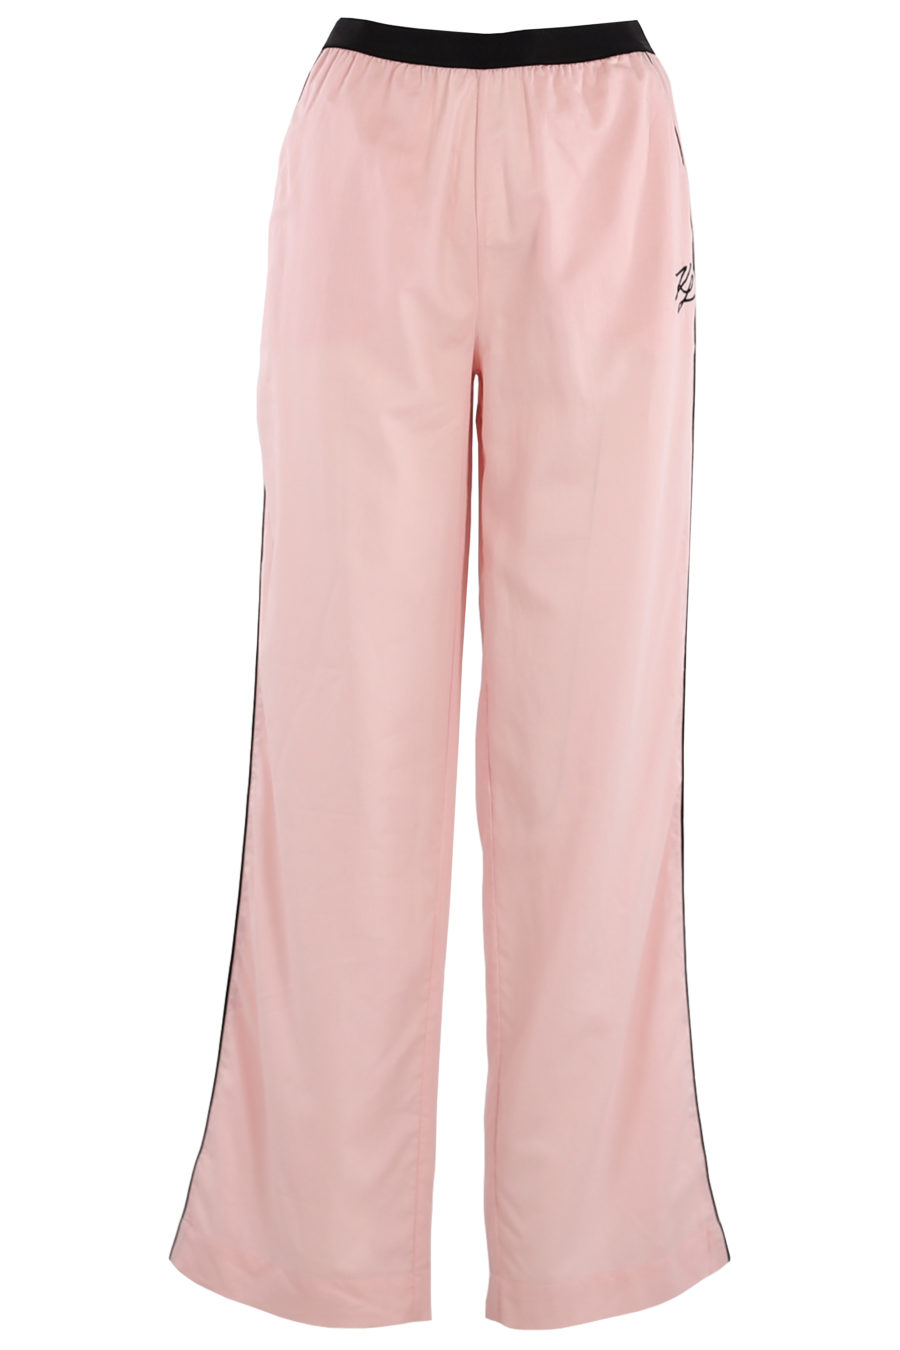 Conjunto de pijama de color rosa - 64ddfe4949d00762e2170e2079f38189fd5477bb